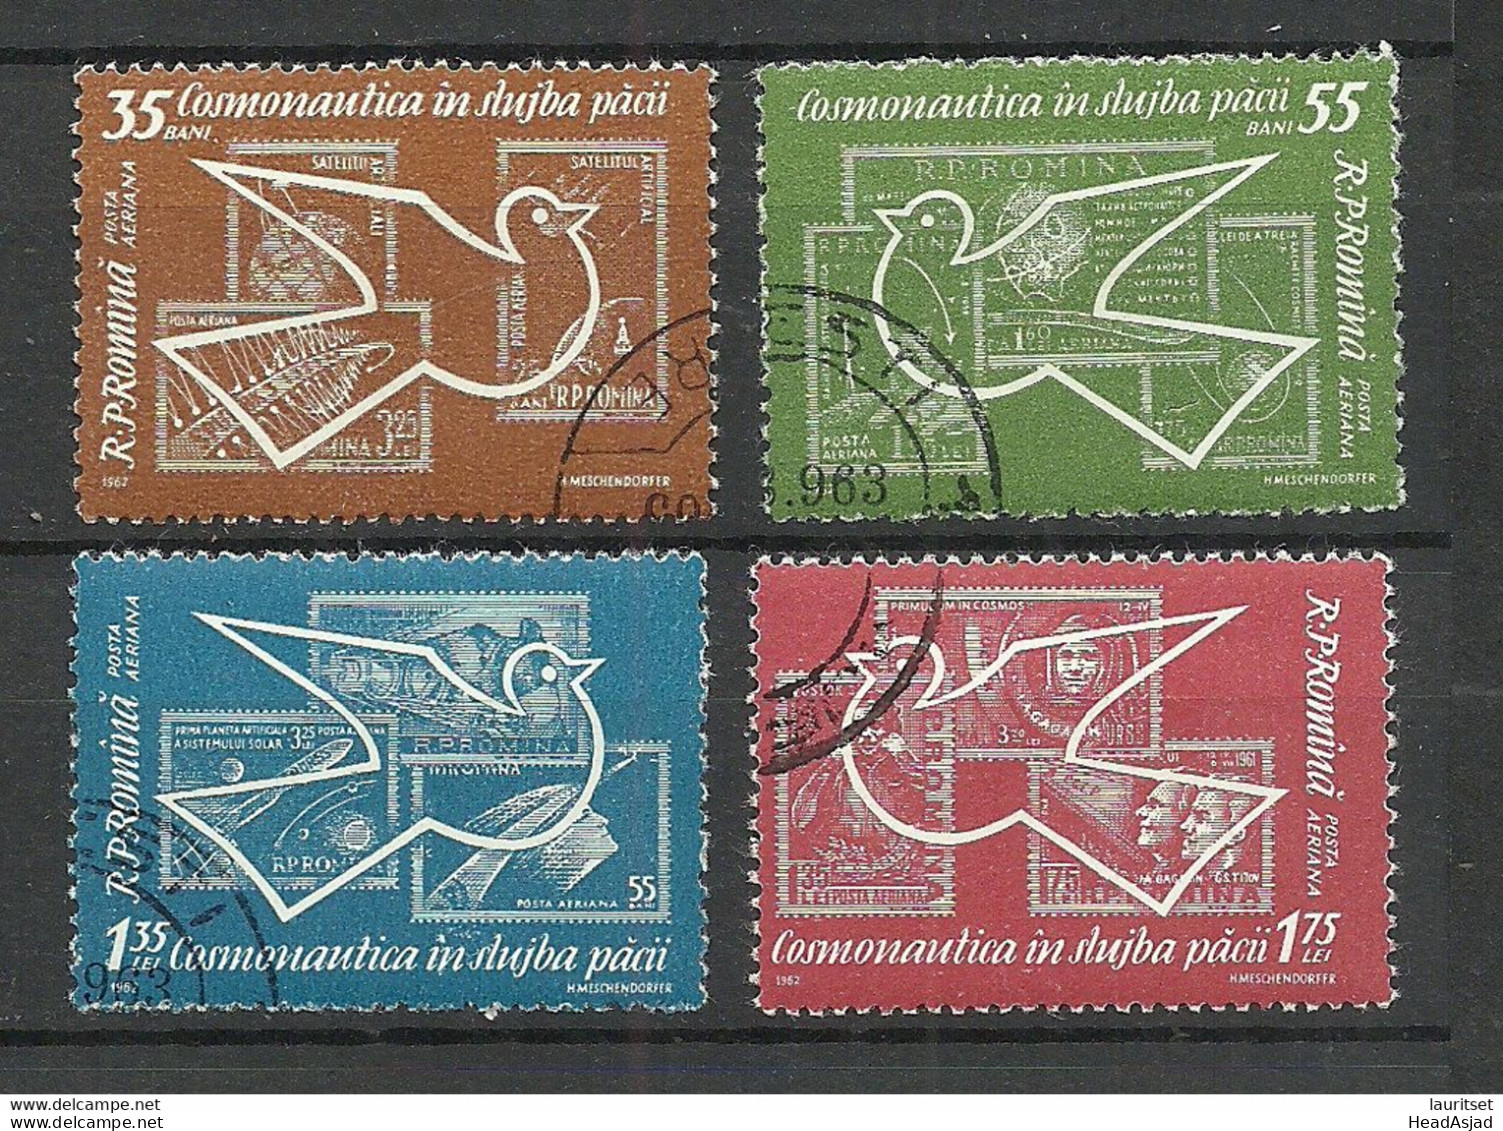 Romania 1962 Michel 2086 - 2089 Kosmonautik Space Weltraumforschung Stamps On Stamp - Postzegels Op Postzegels